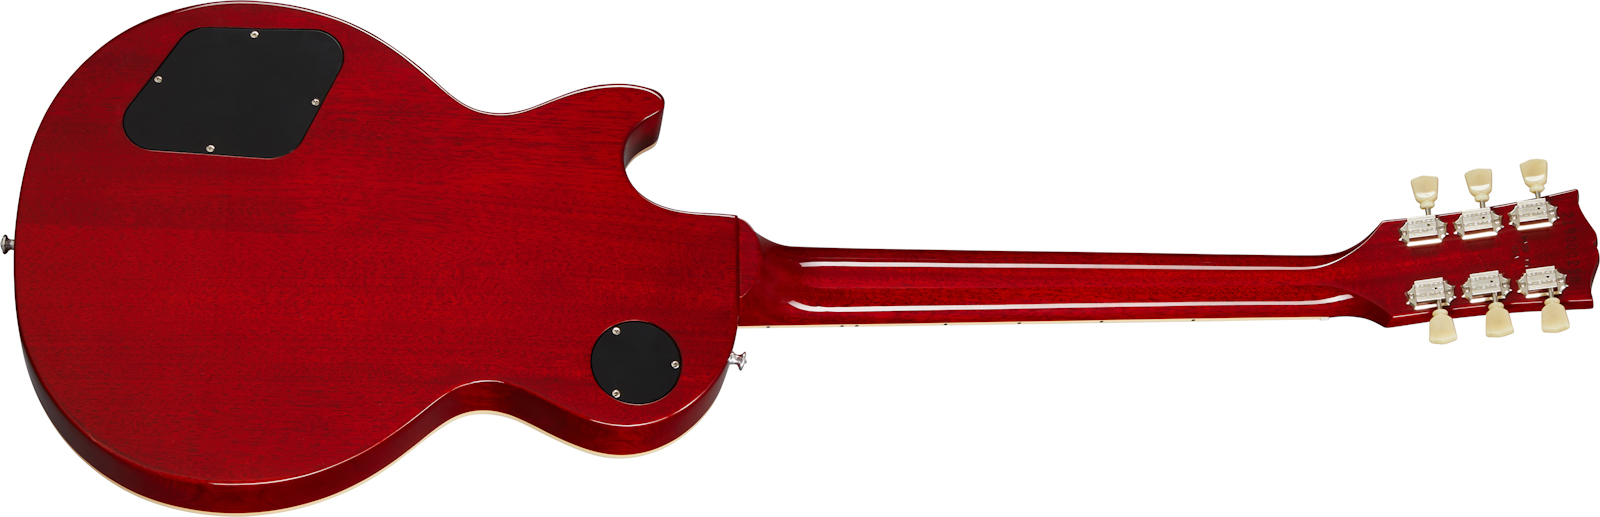 Gibson Les Paul Deluxe 70s Original 2mh Ht Rw - 70s Cherry Sunburst - Guitarra eléctrica de corte único. - Variation 1